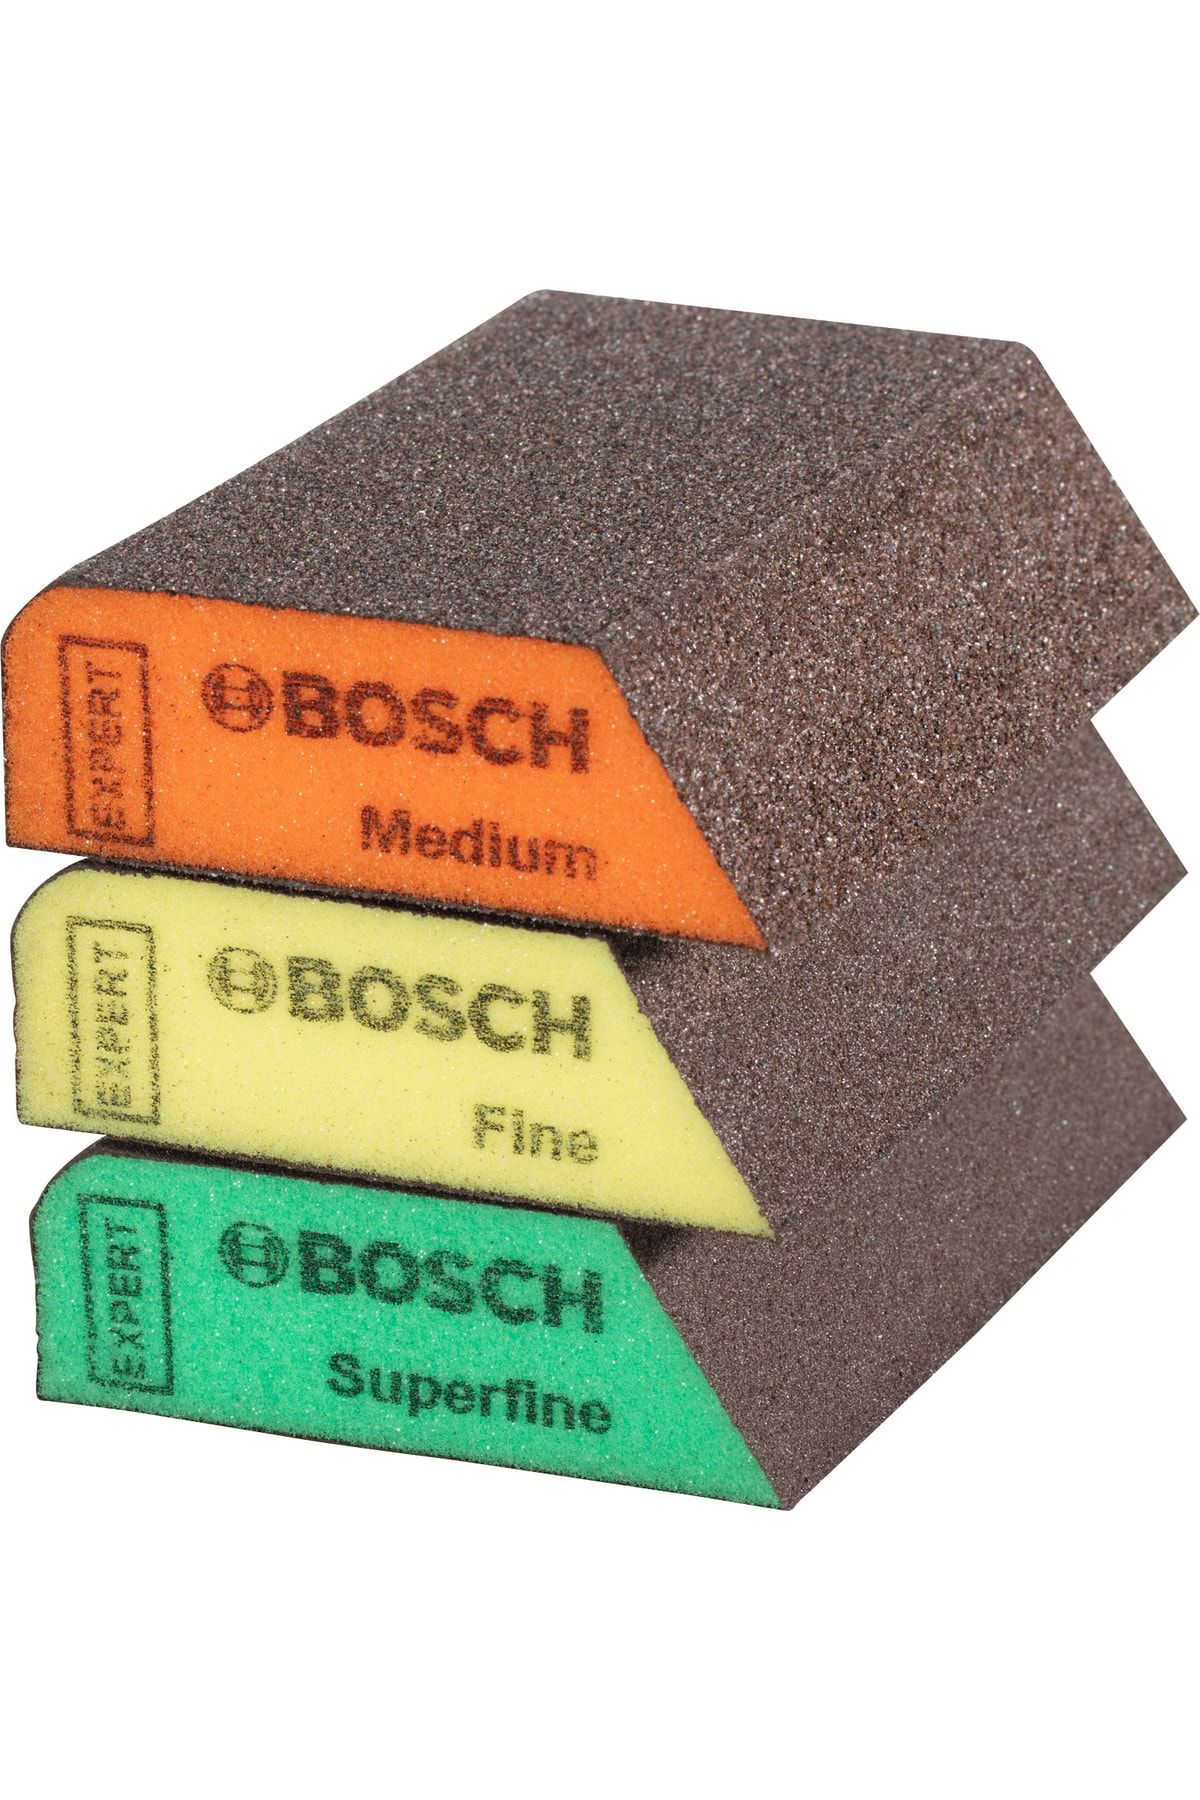 Bosch Expert S470 Combi Blok 69 X 97 X 26 Mm, M, F, Sf 3 Parça